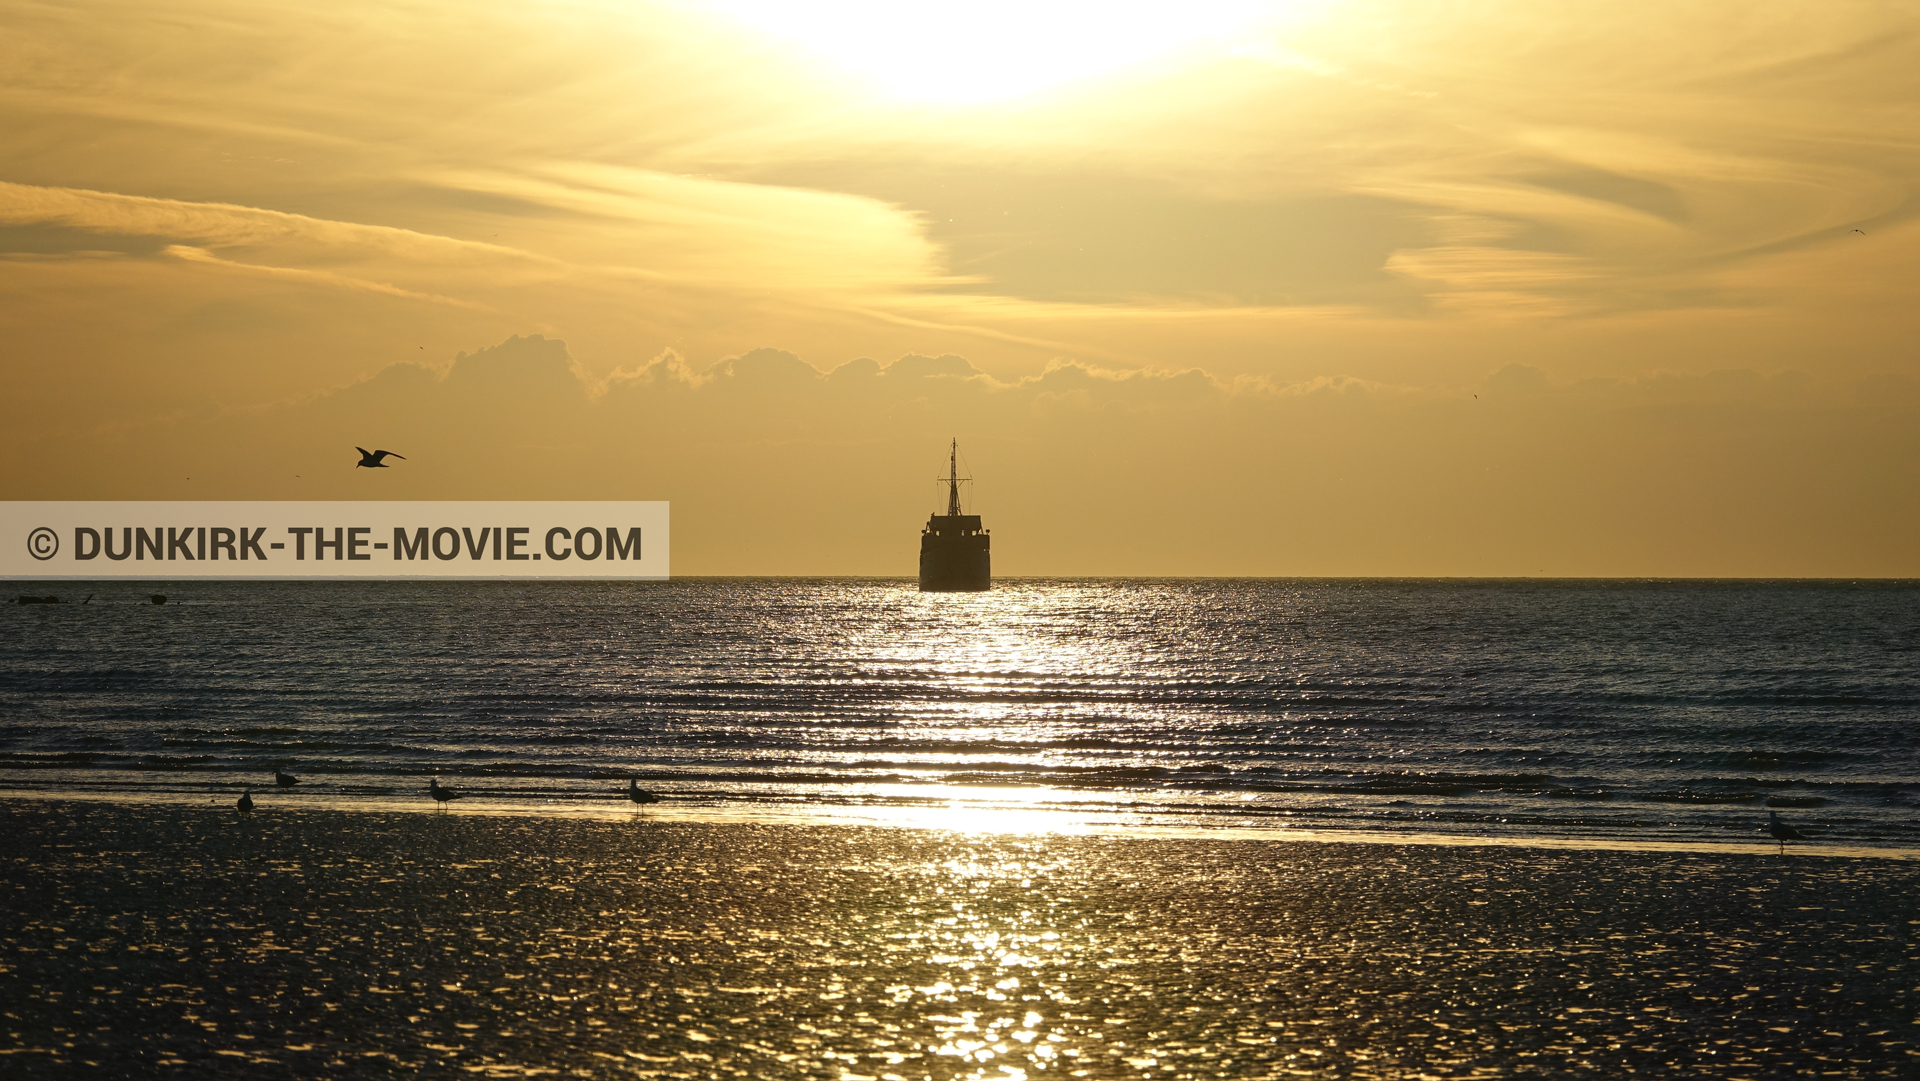 Photo avec plage, mer calme, ciel orangé, bateau,  des dessous du Film Dunkerque de Nolan